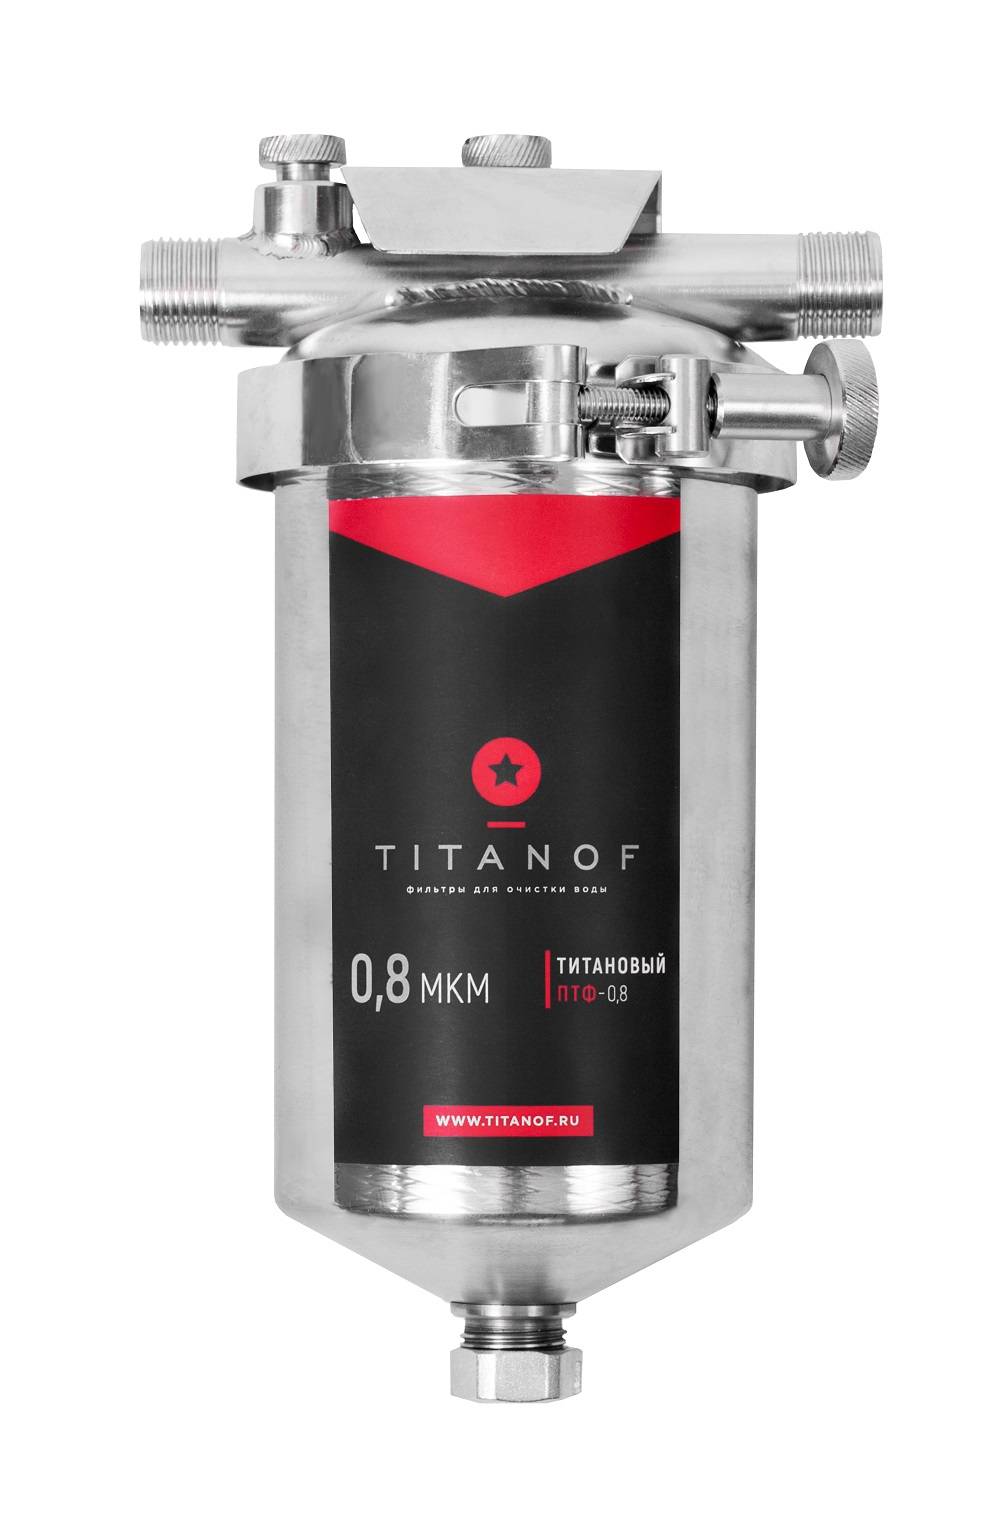 Патронный титановый фильтр titanof отзывы - фильтры для воды - сайт отзывов из россии